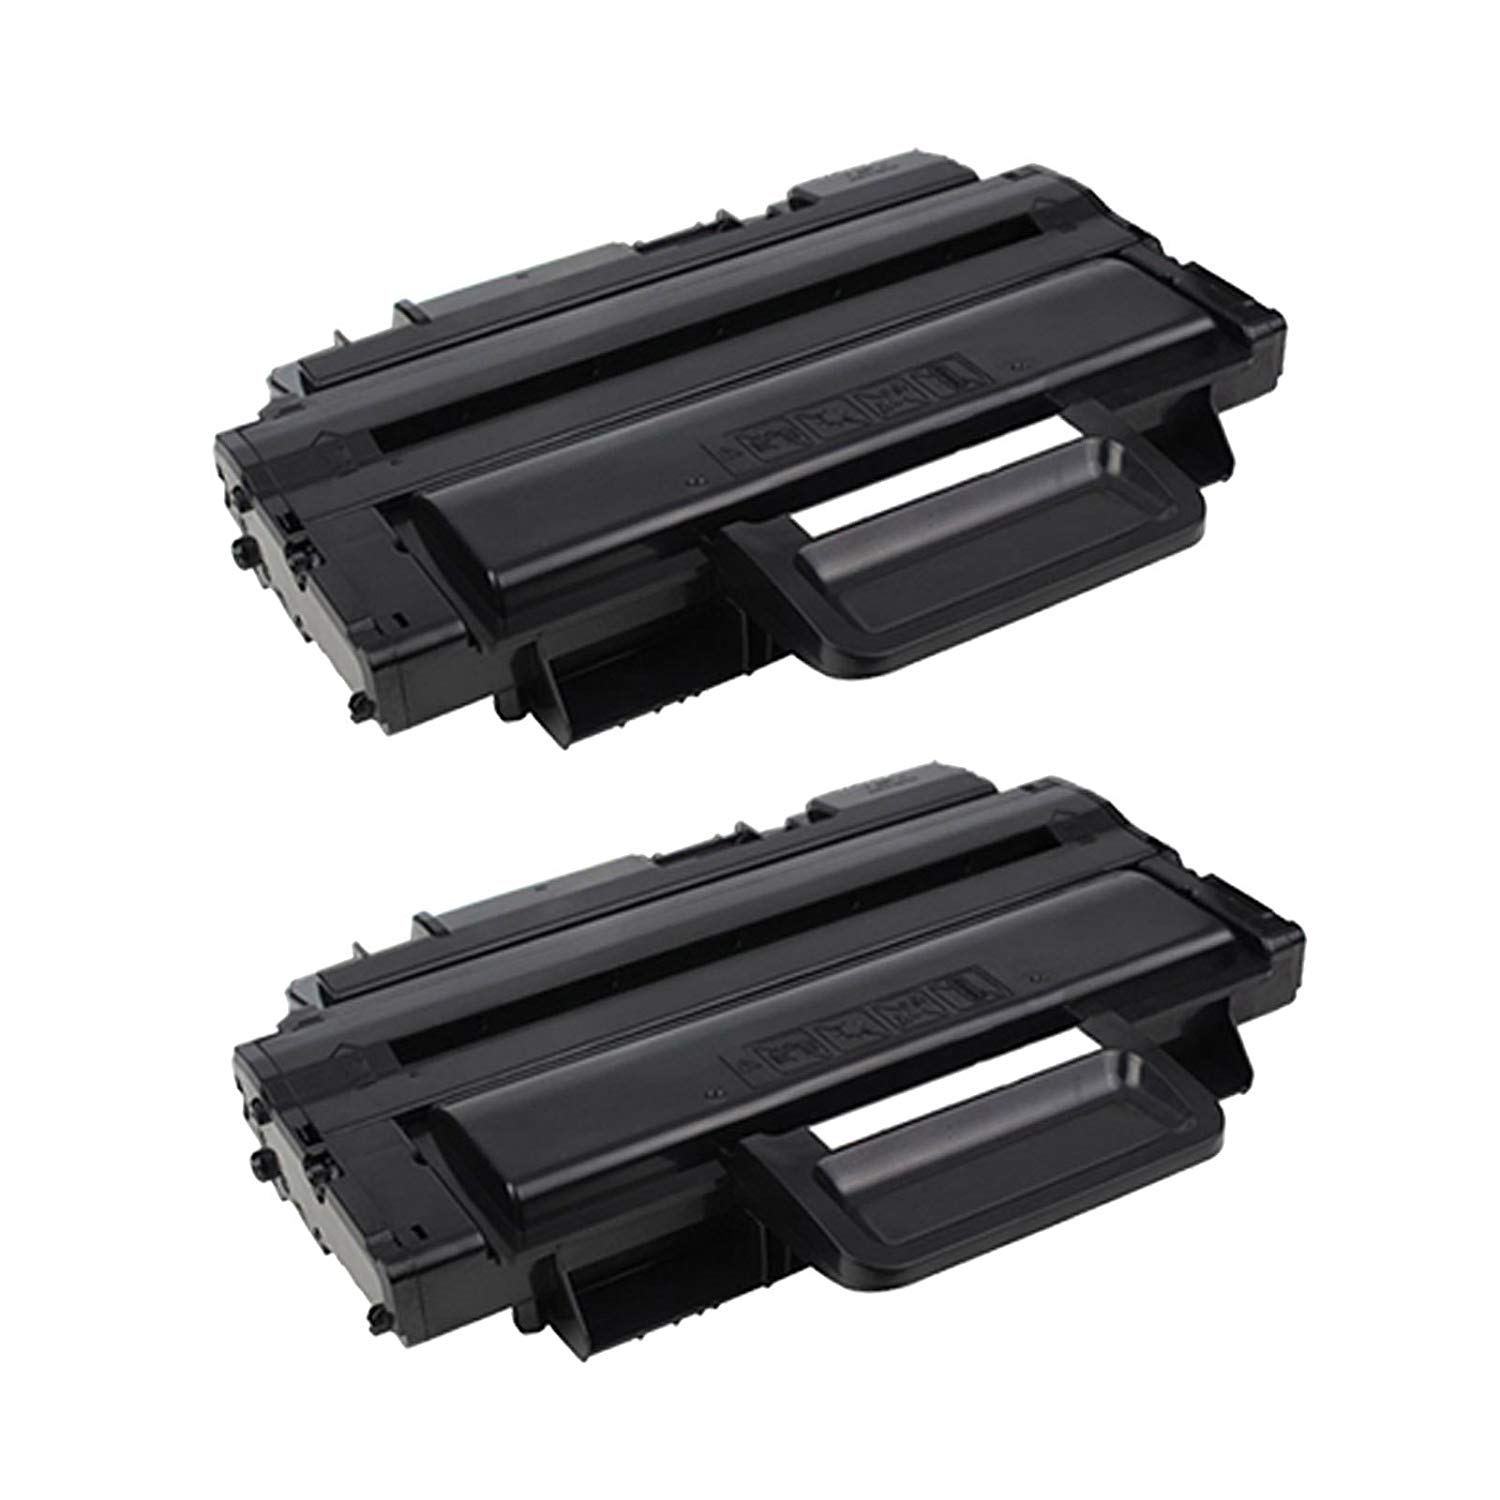 2 Toner Cartridge Compatible Samsung MLT-D208L (D208L) Black